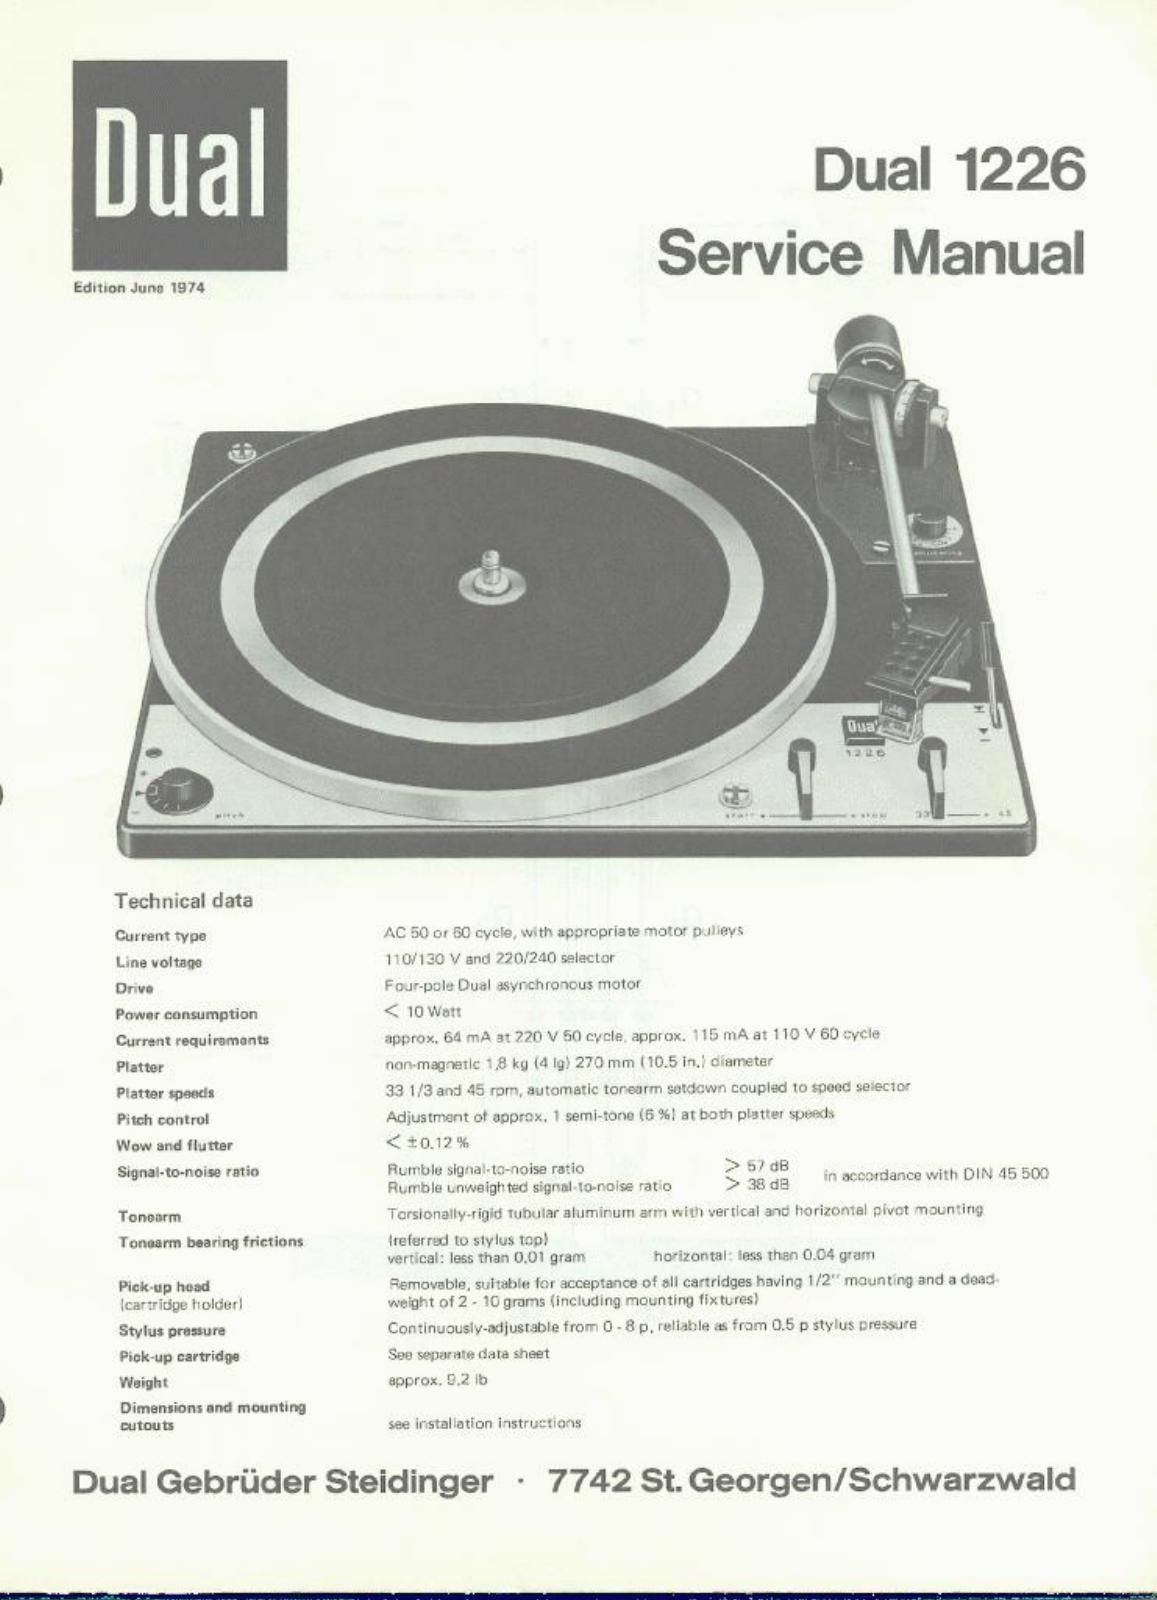 Service Manual-Anleitung für Dual 1226